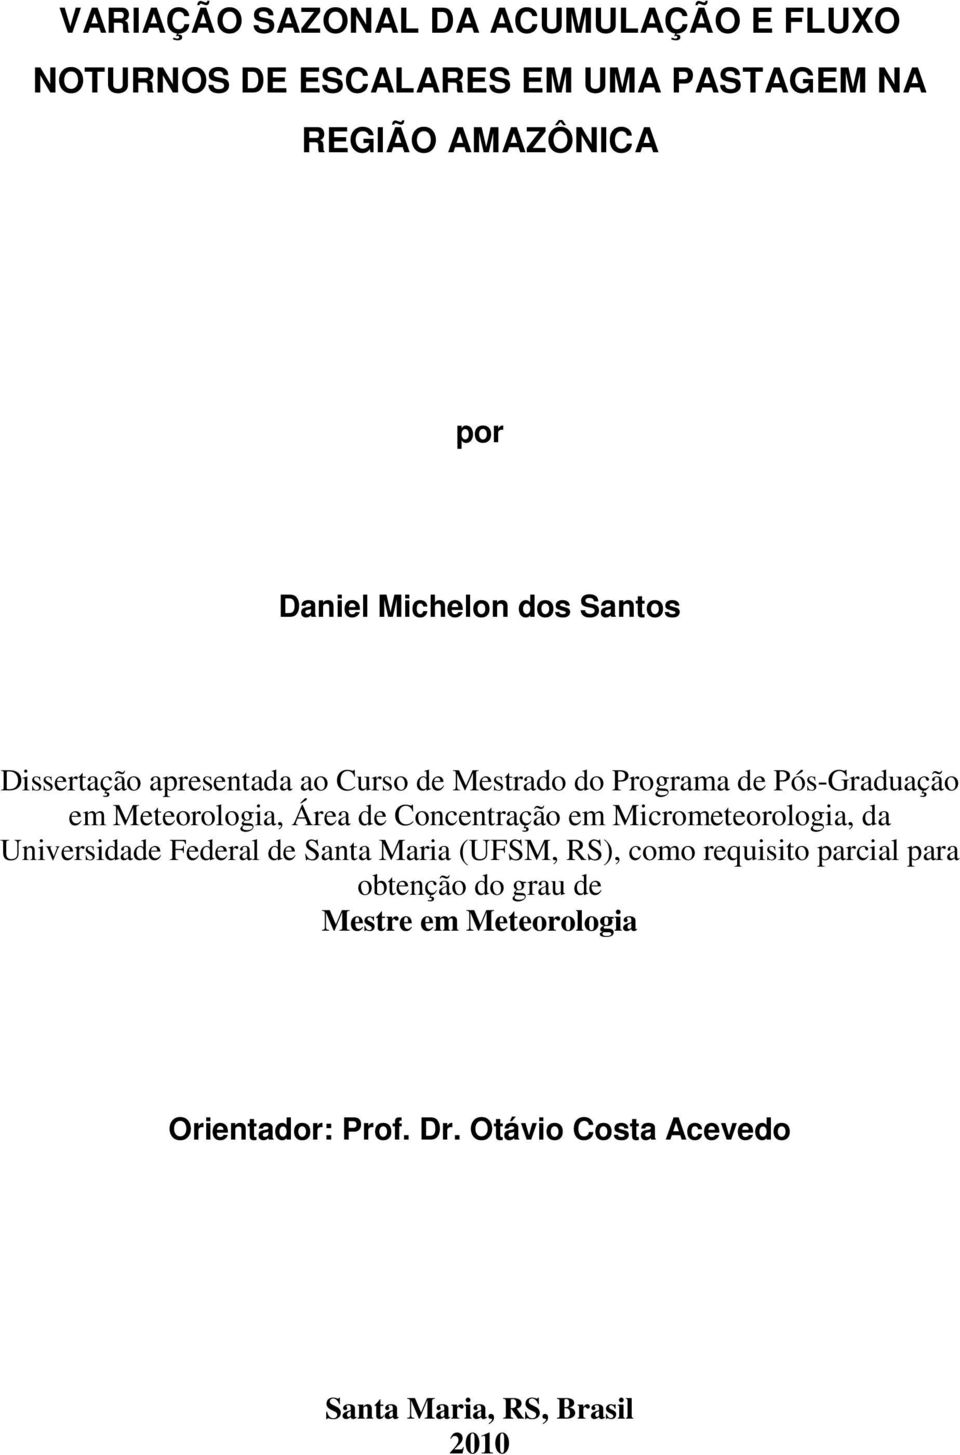 Área de Concentração em Micrometeorologia, da Universidade Federal de Santa Maria (UFSM, RS), como requisito